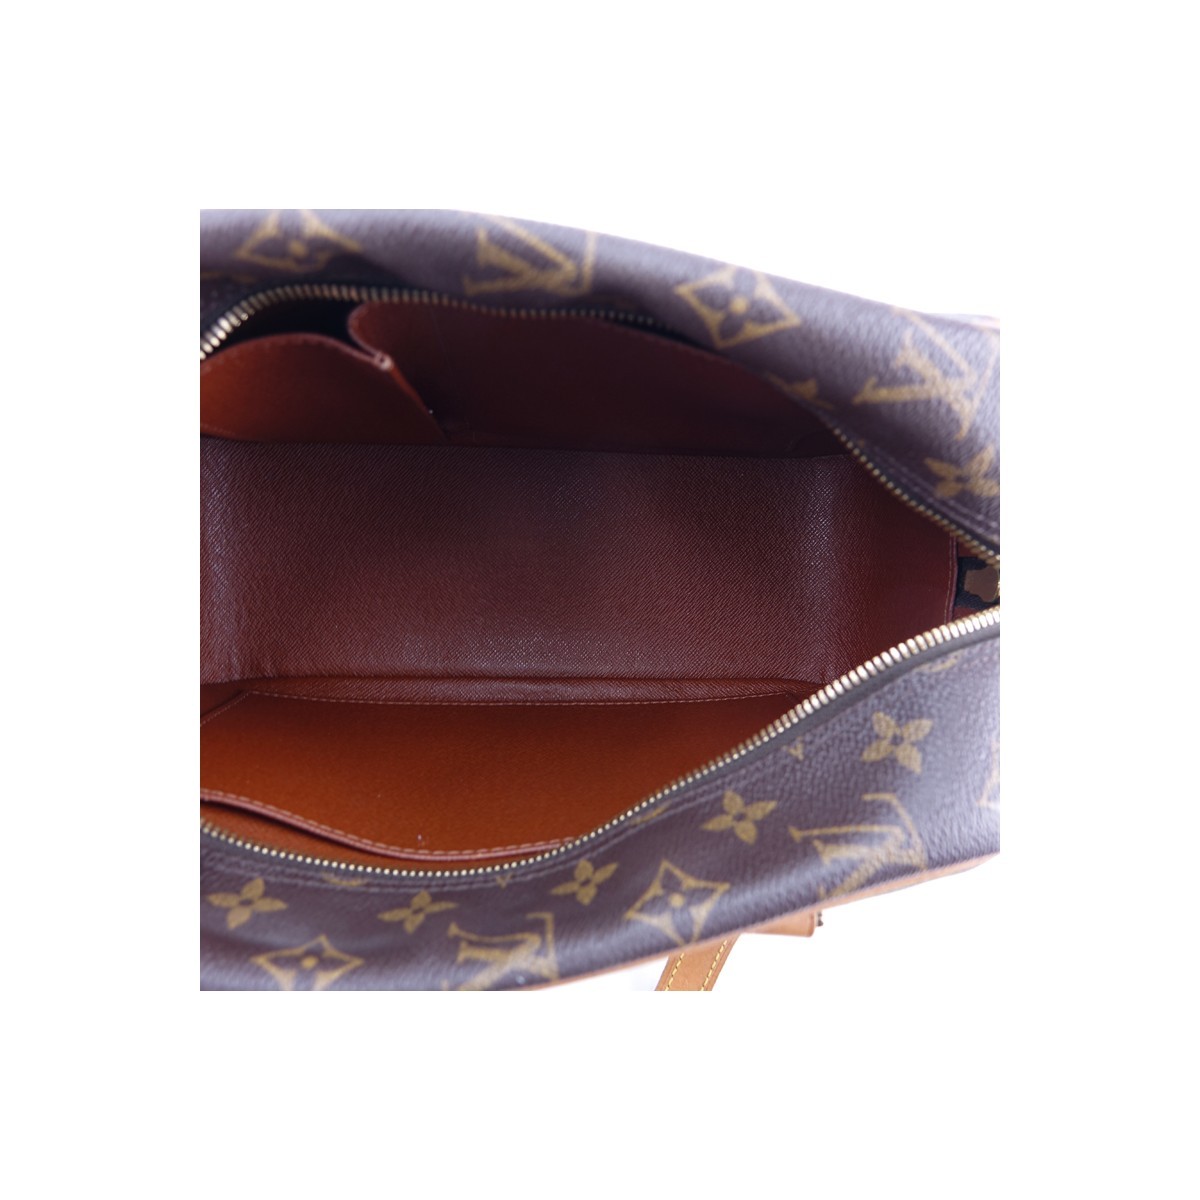 Louis Vuitton Brown Monogram Coated Canvas Cite MM Handbag. Golden brass hardware, brown interior with patch pockets, vachetta straps.